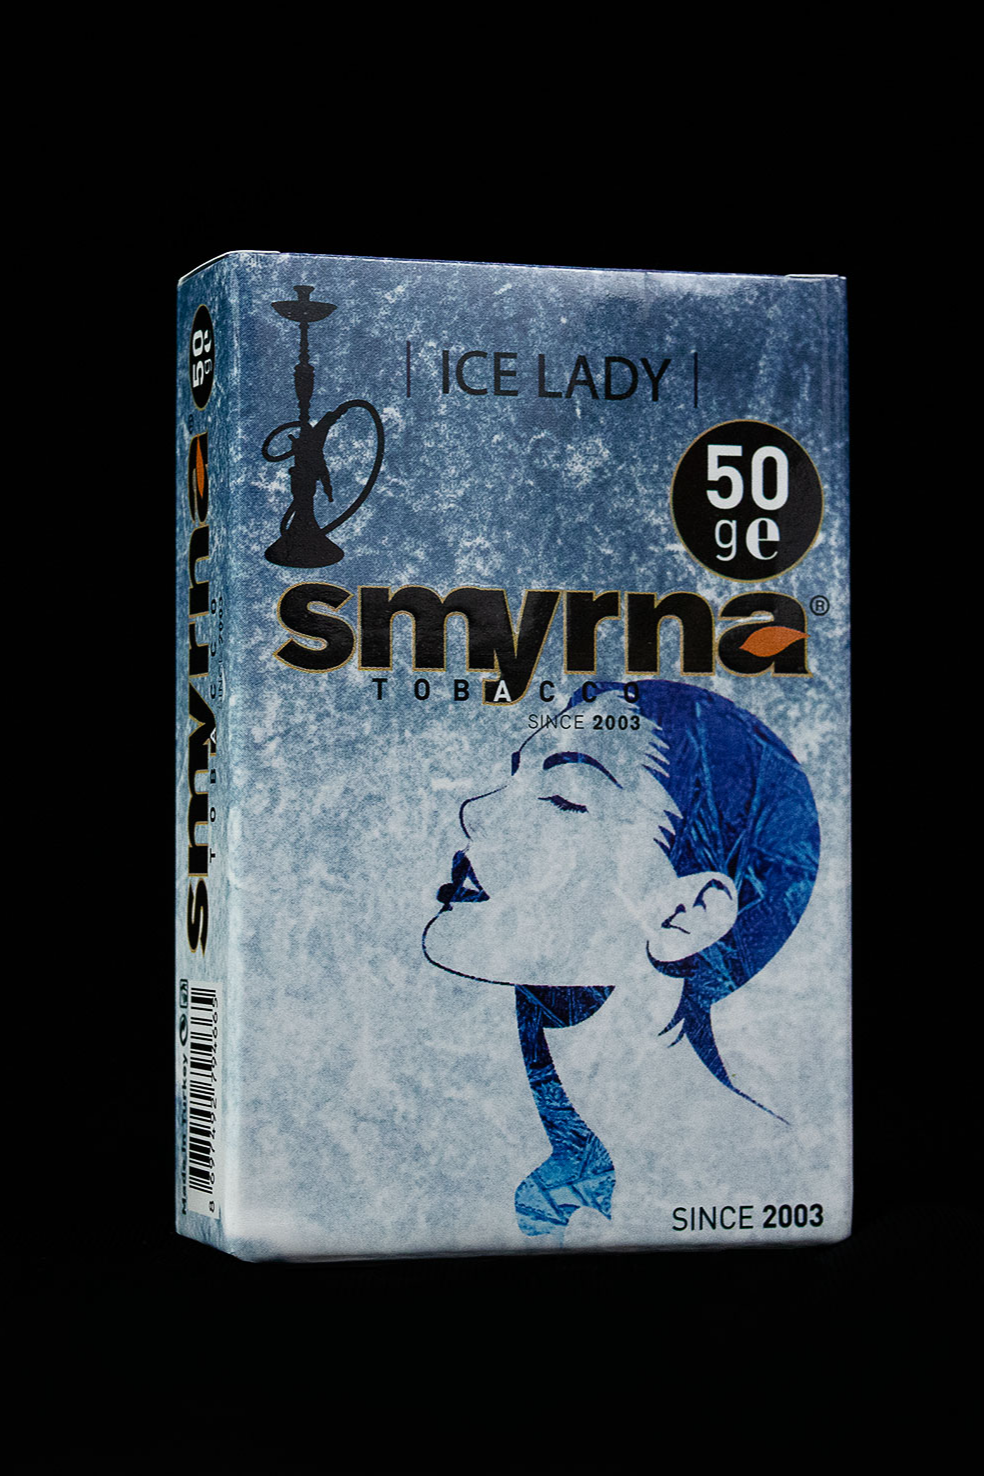 SMYRNA ICE LADY